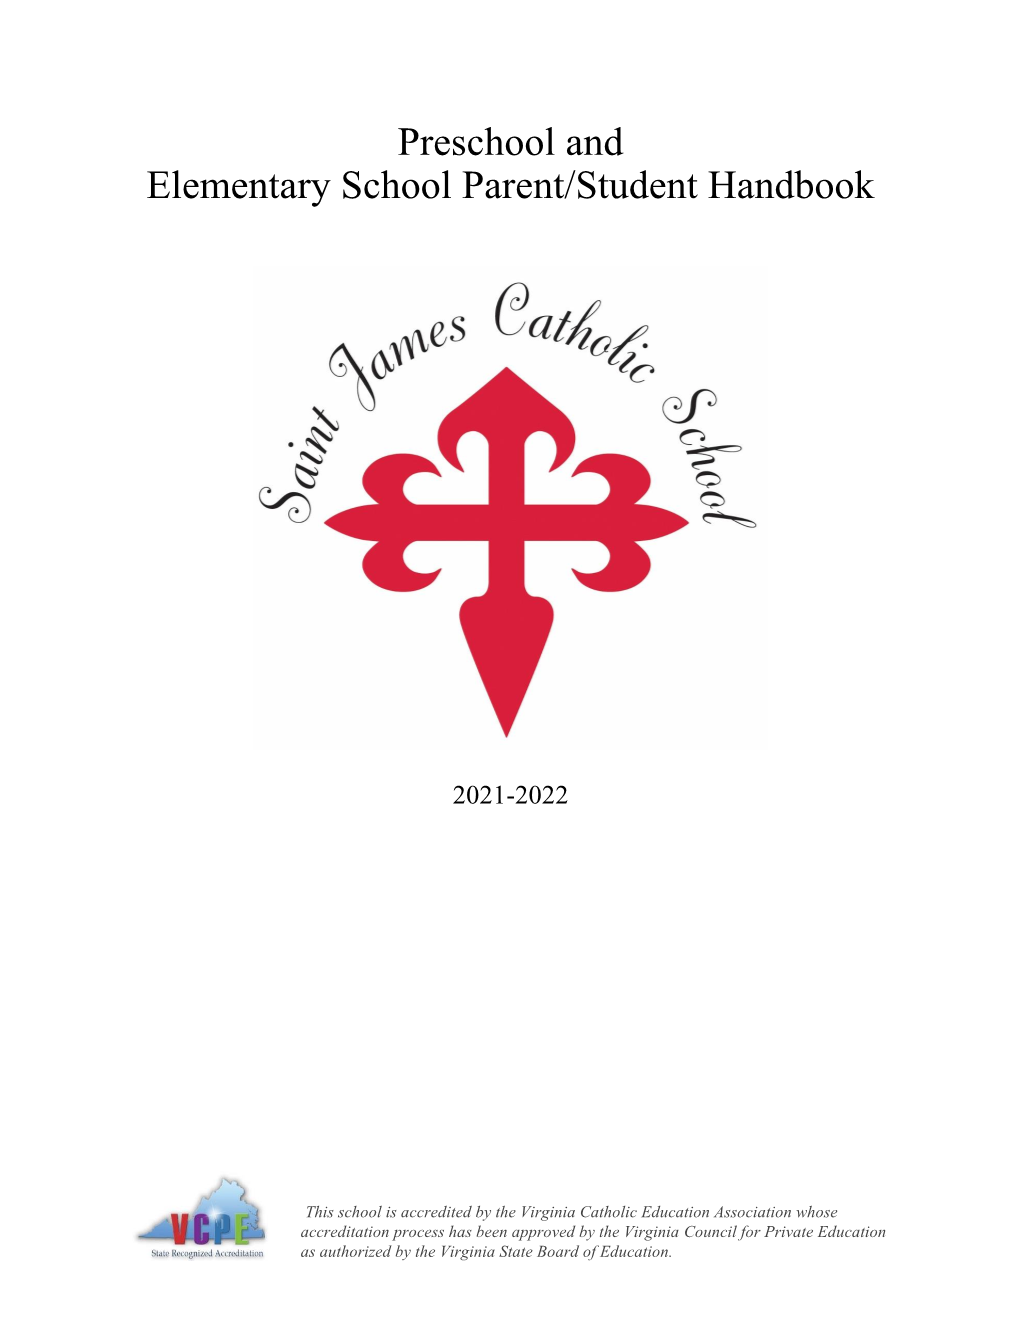 Preschool and Elementary School Parent/Student Handbook